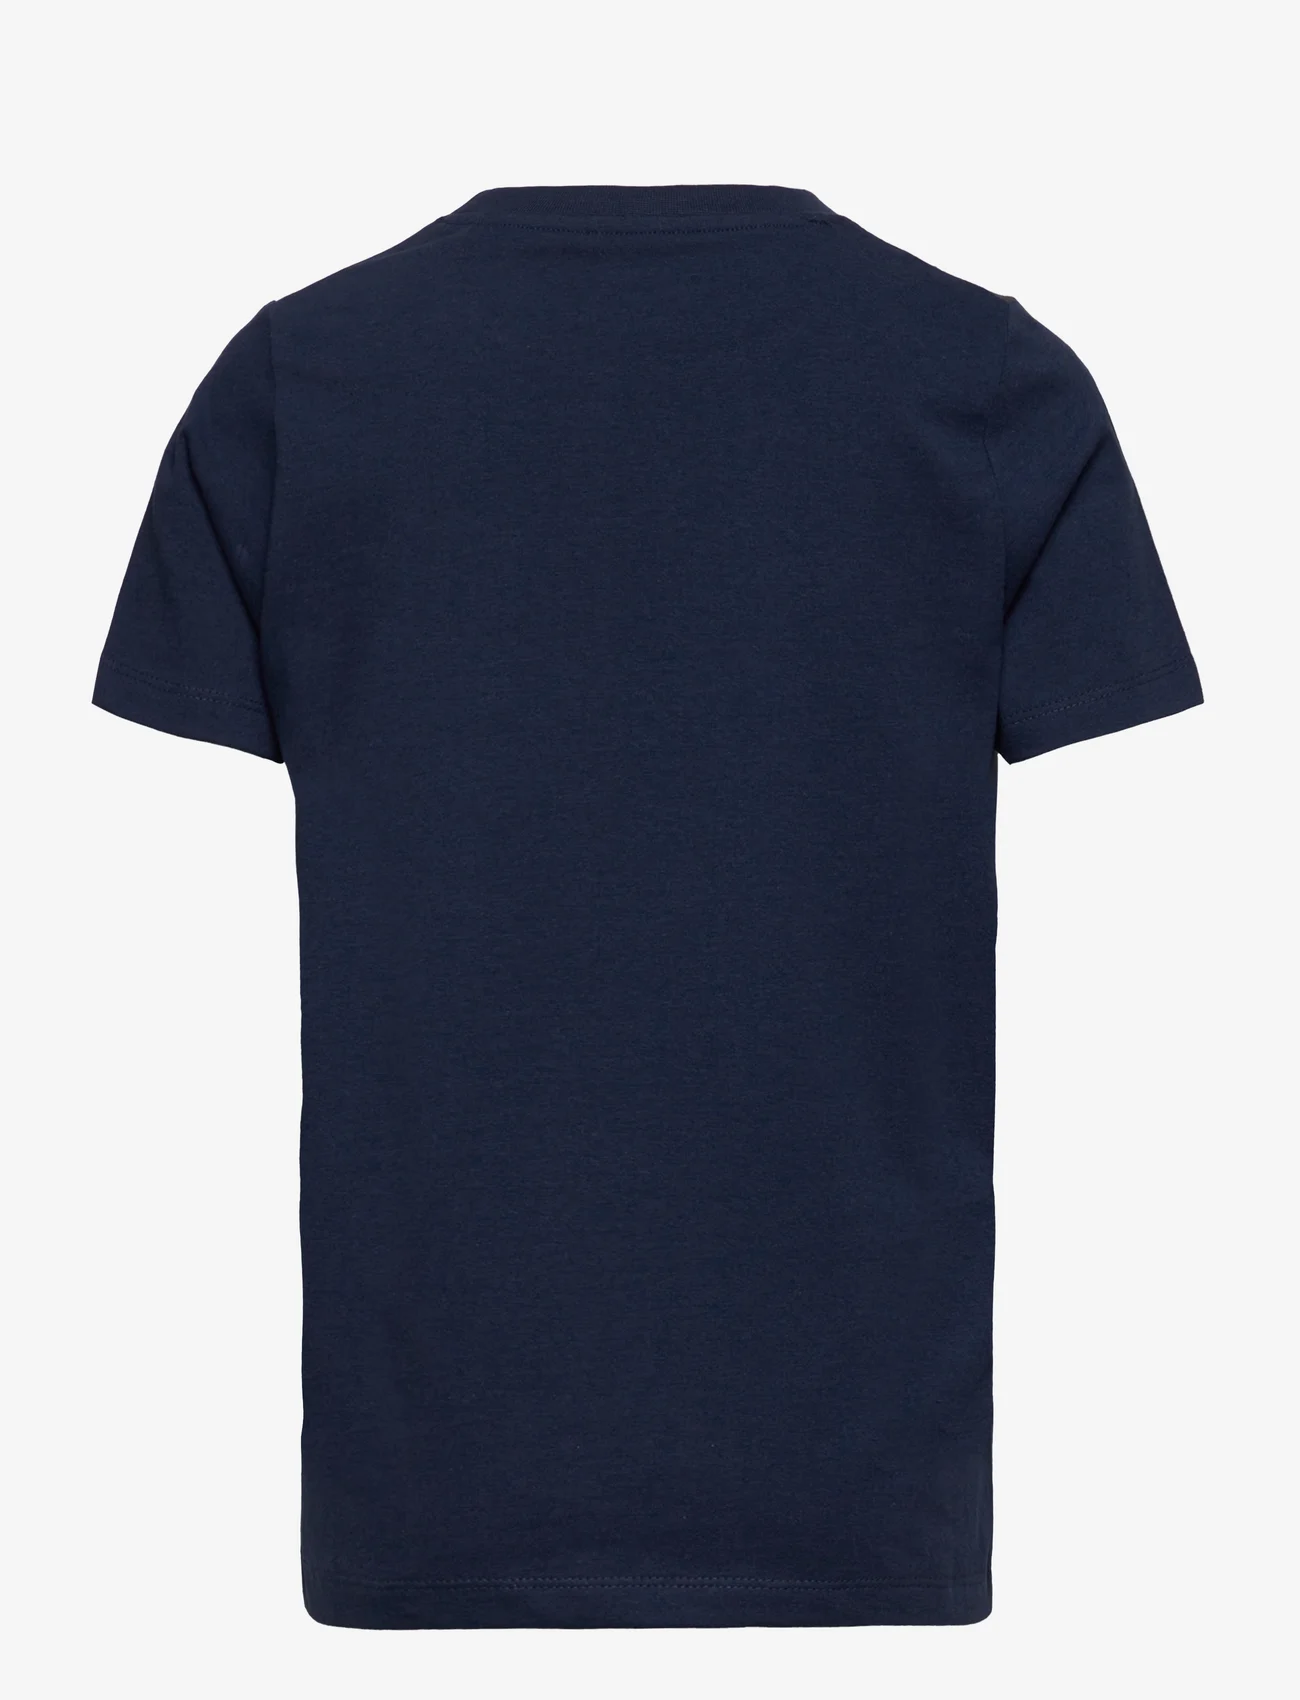 MeToo - T-shirt SS - lühikeste varrukatega t-särgid - dress blues - 1